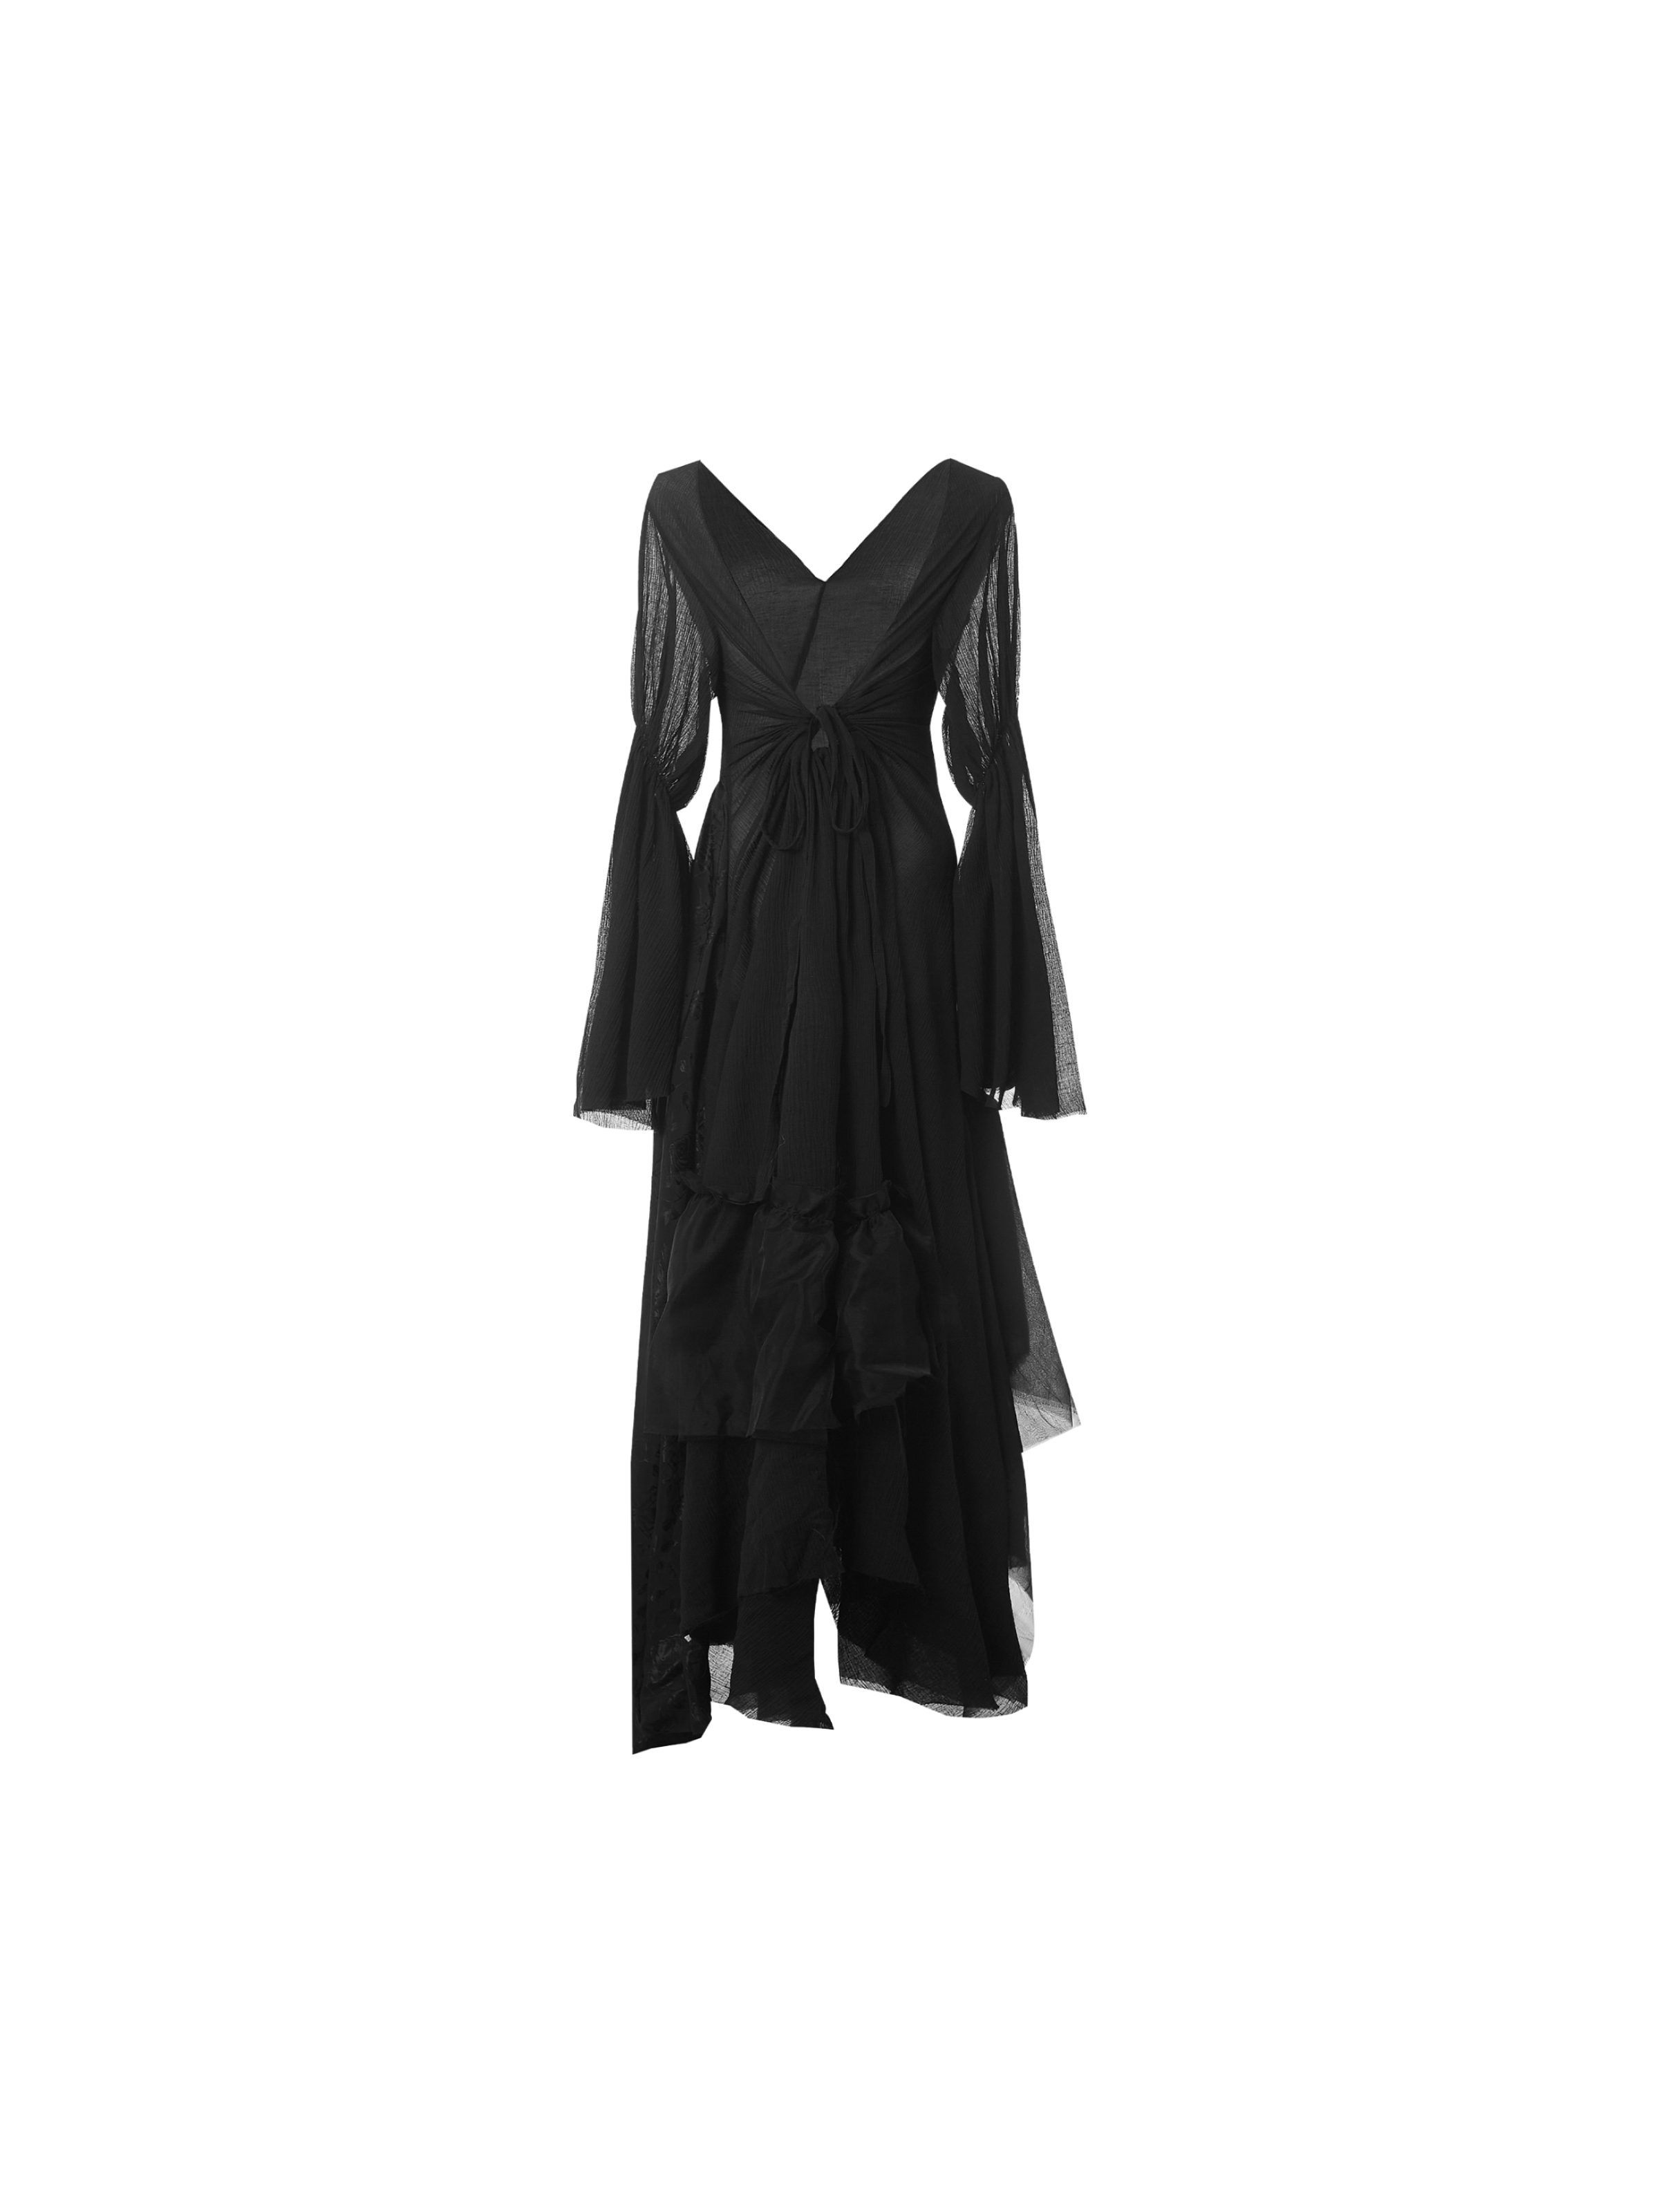 블랙 브이넥 드레스